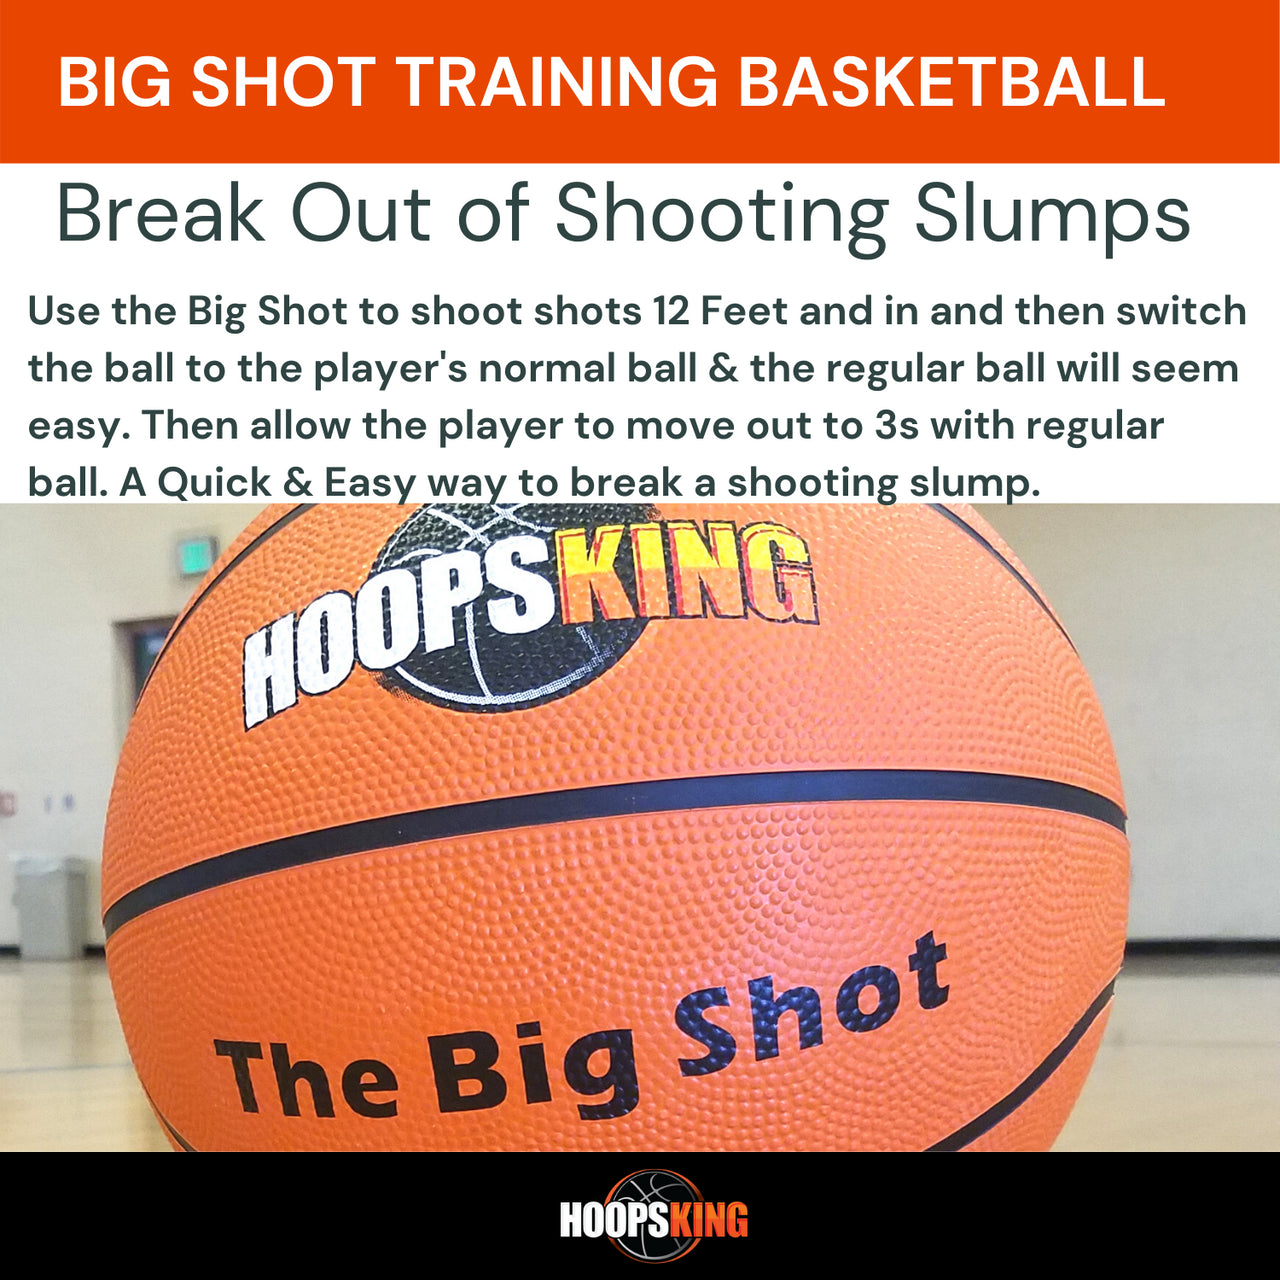 Big Shot Oversized training basketball